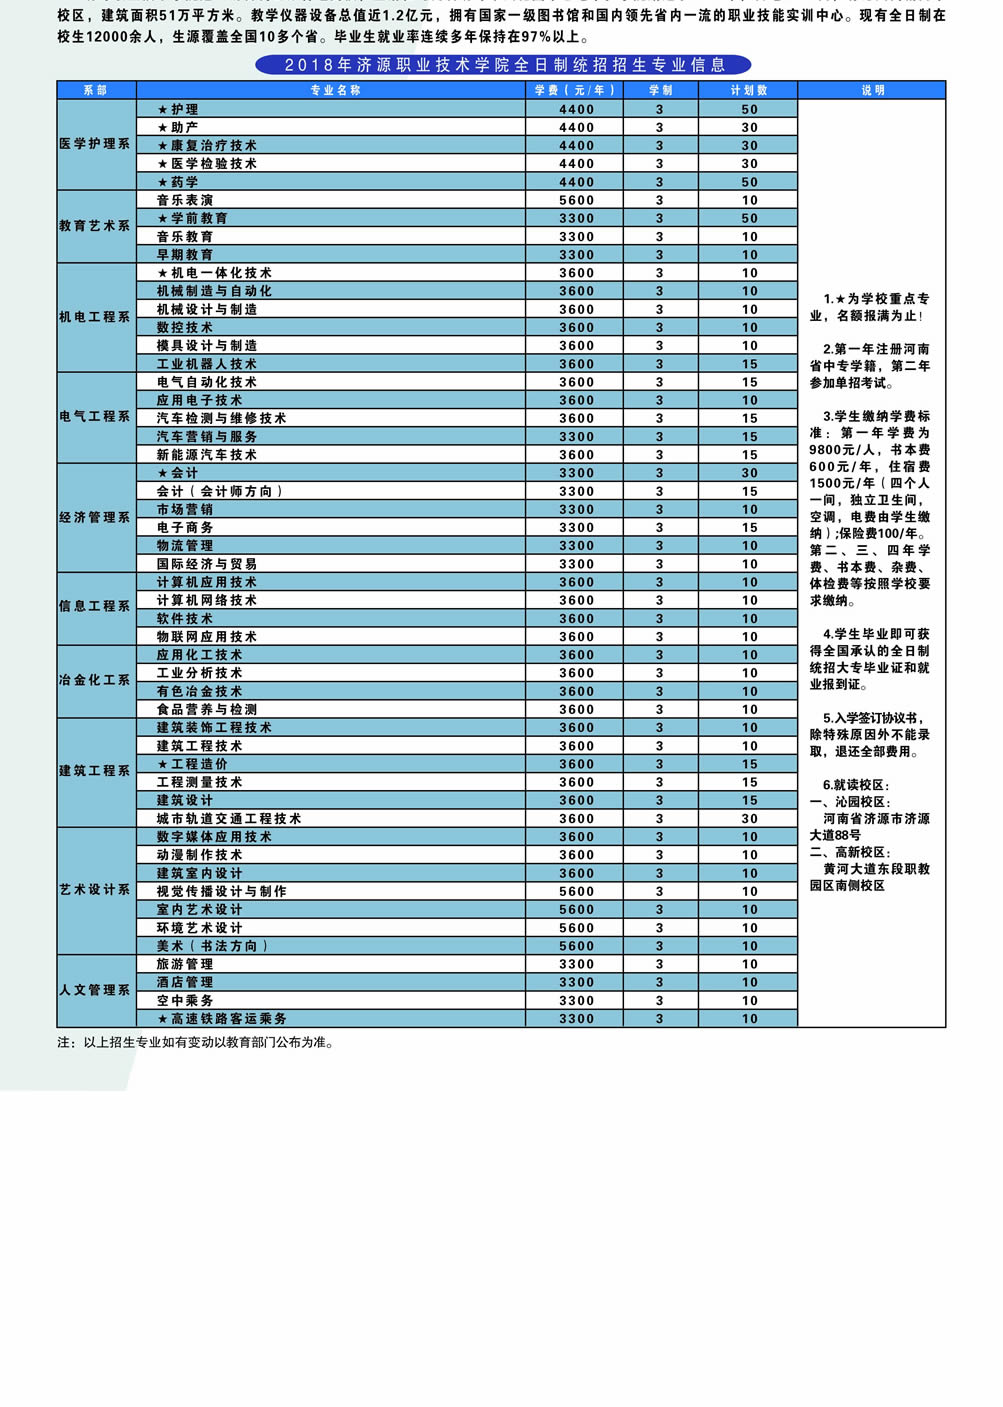 台州函授 成人教育 网络教育 全日制计划内统招